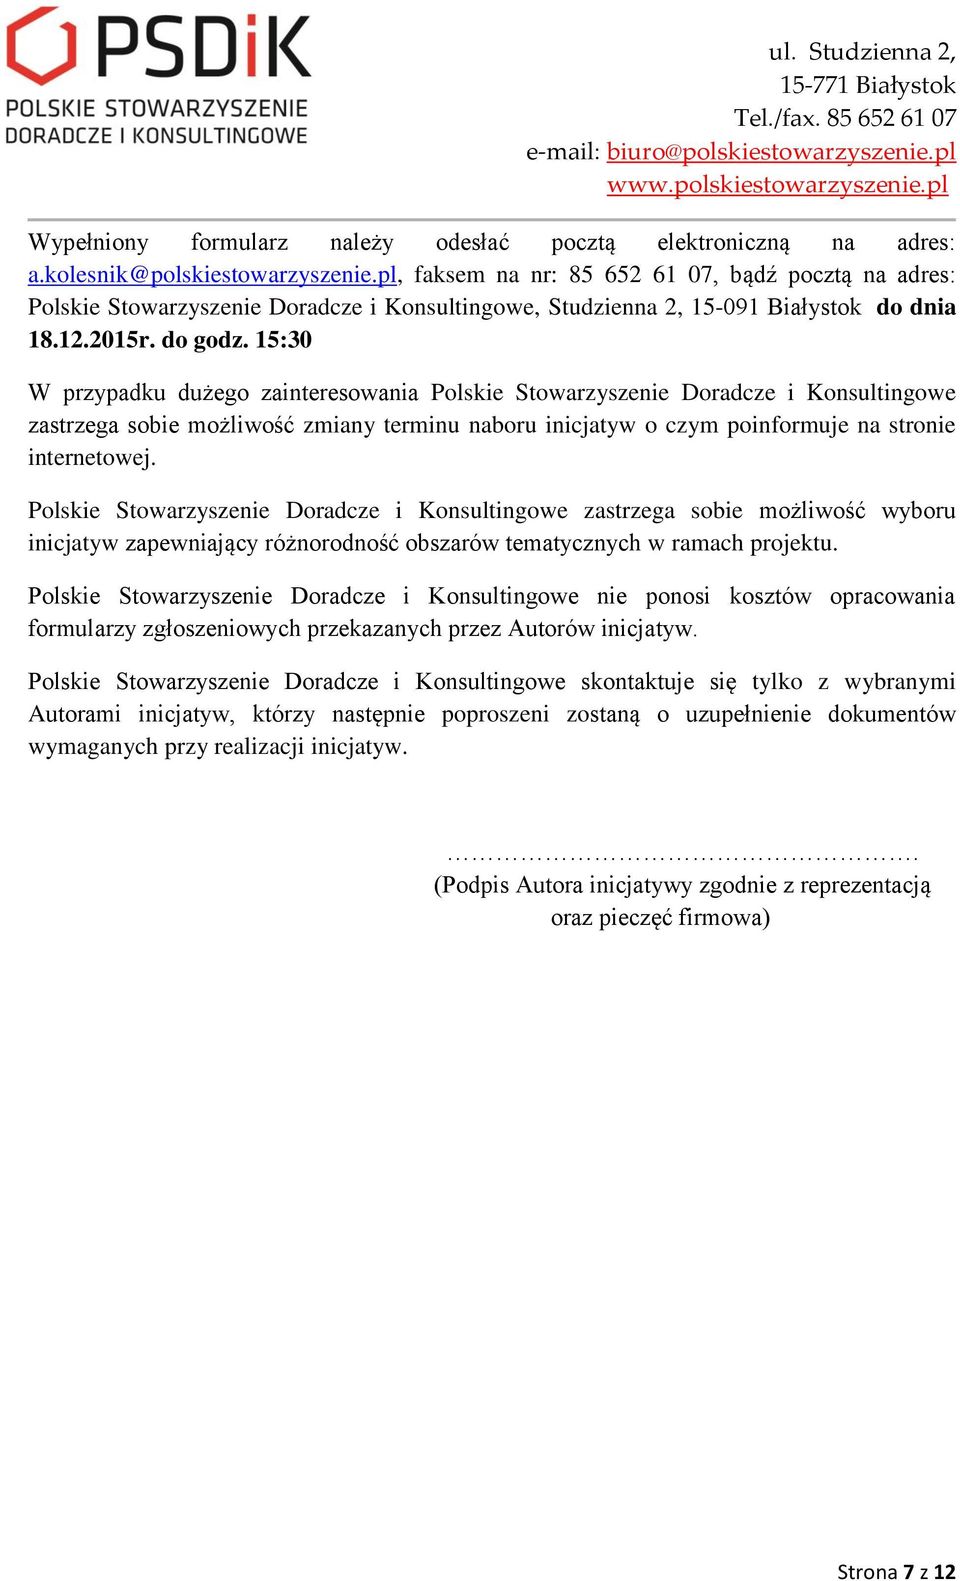 15:30 W przypadku dużego zainteresowania Polskie Stowarzyszenie Doradcze i Konsultingowe zastrzega sobie możliwość zmiany terminu naboru inicjatyw o czym poinformuje na stronie internetowej.